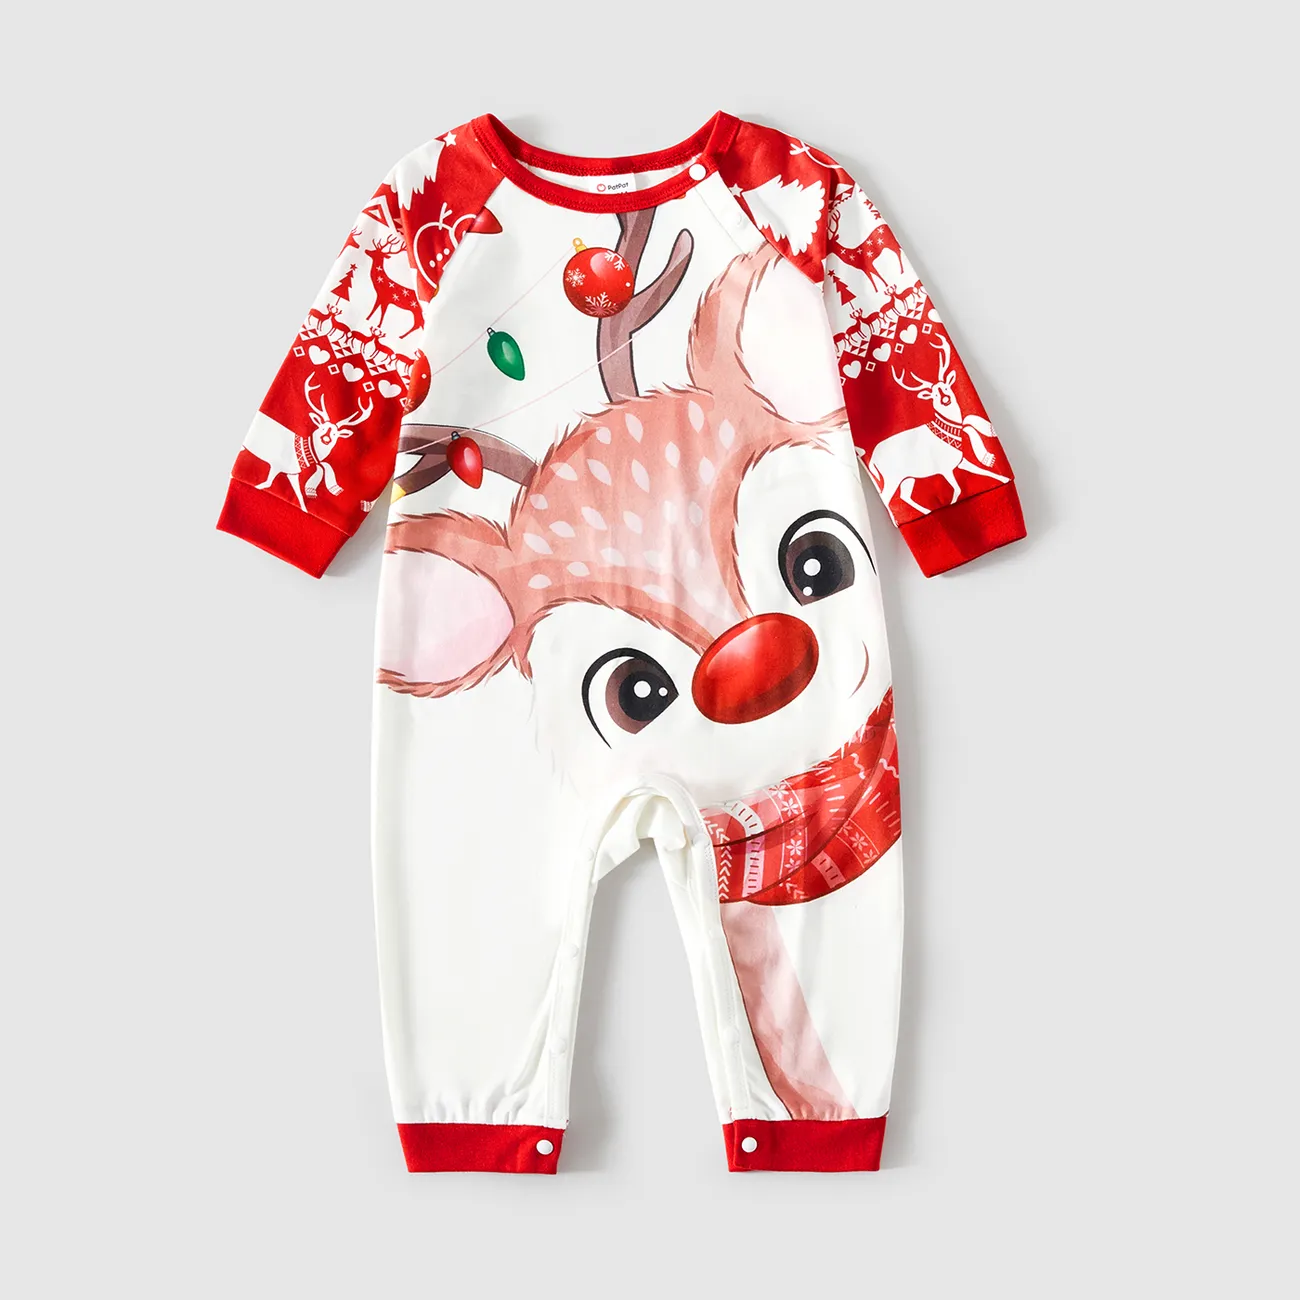 Christmas Deer & Lights Print Red Family Matching Raglan-sleeve Pajamas Sets (Flame Resistant)  big image 1